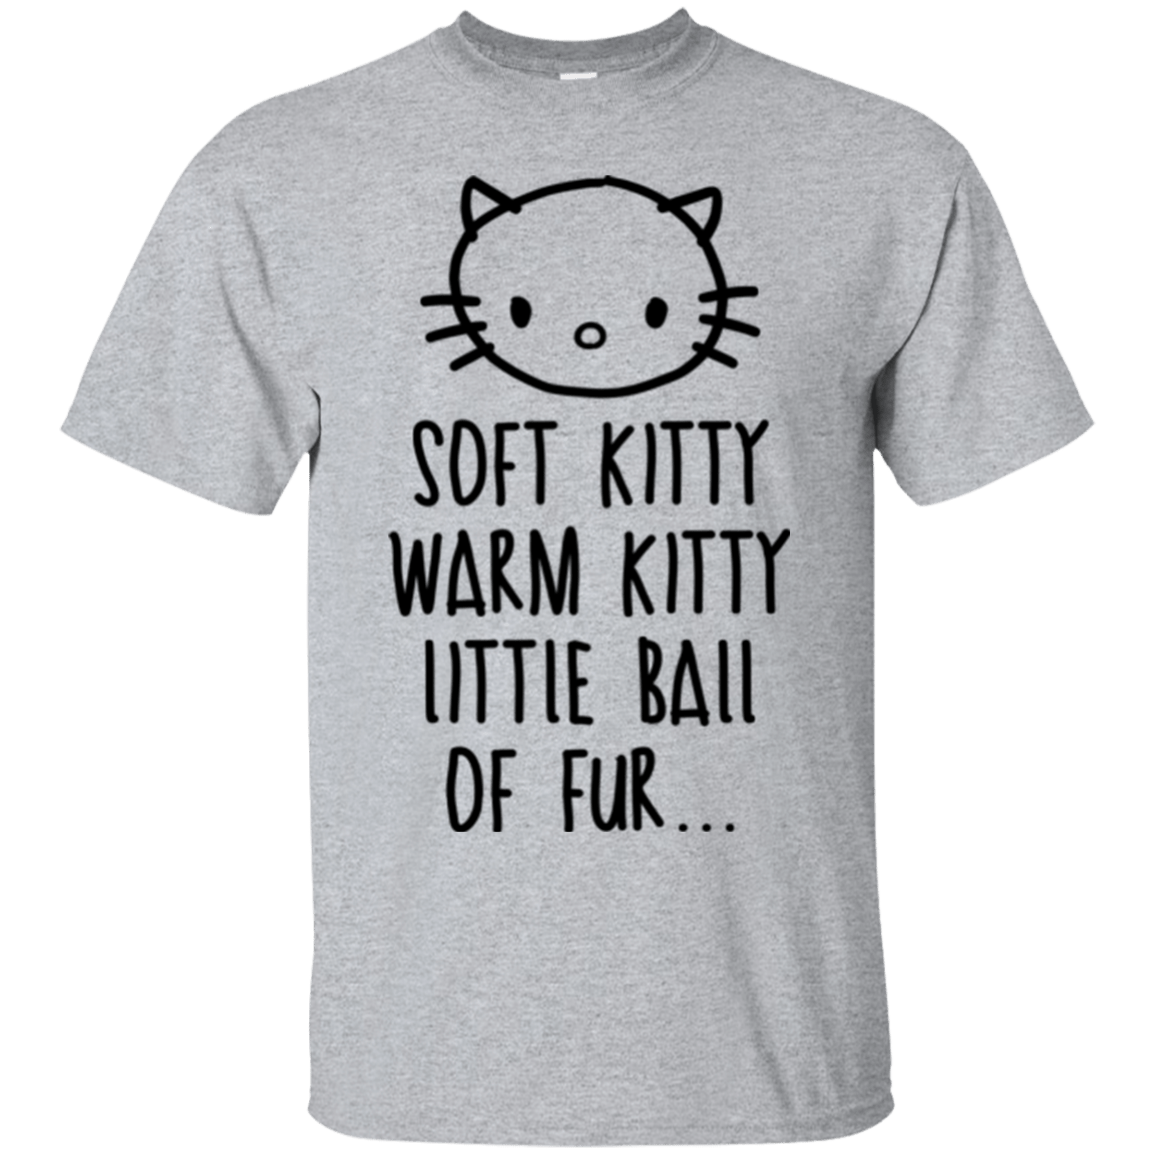 T-Shirts Sport Grey / Small Weird Kitty T-Shirt